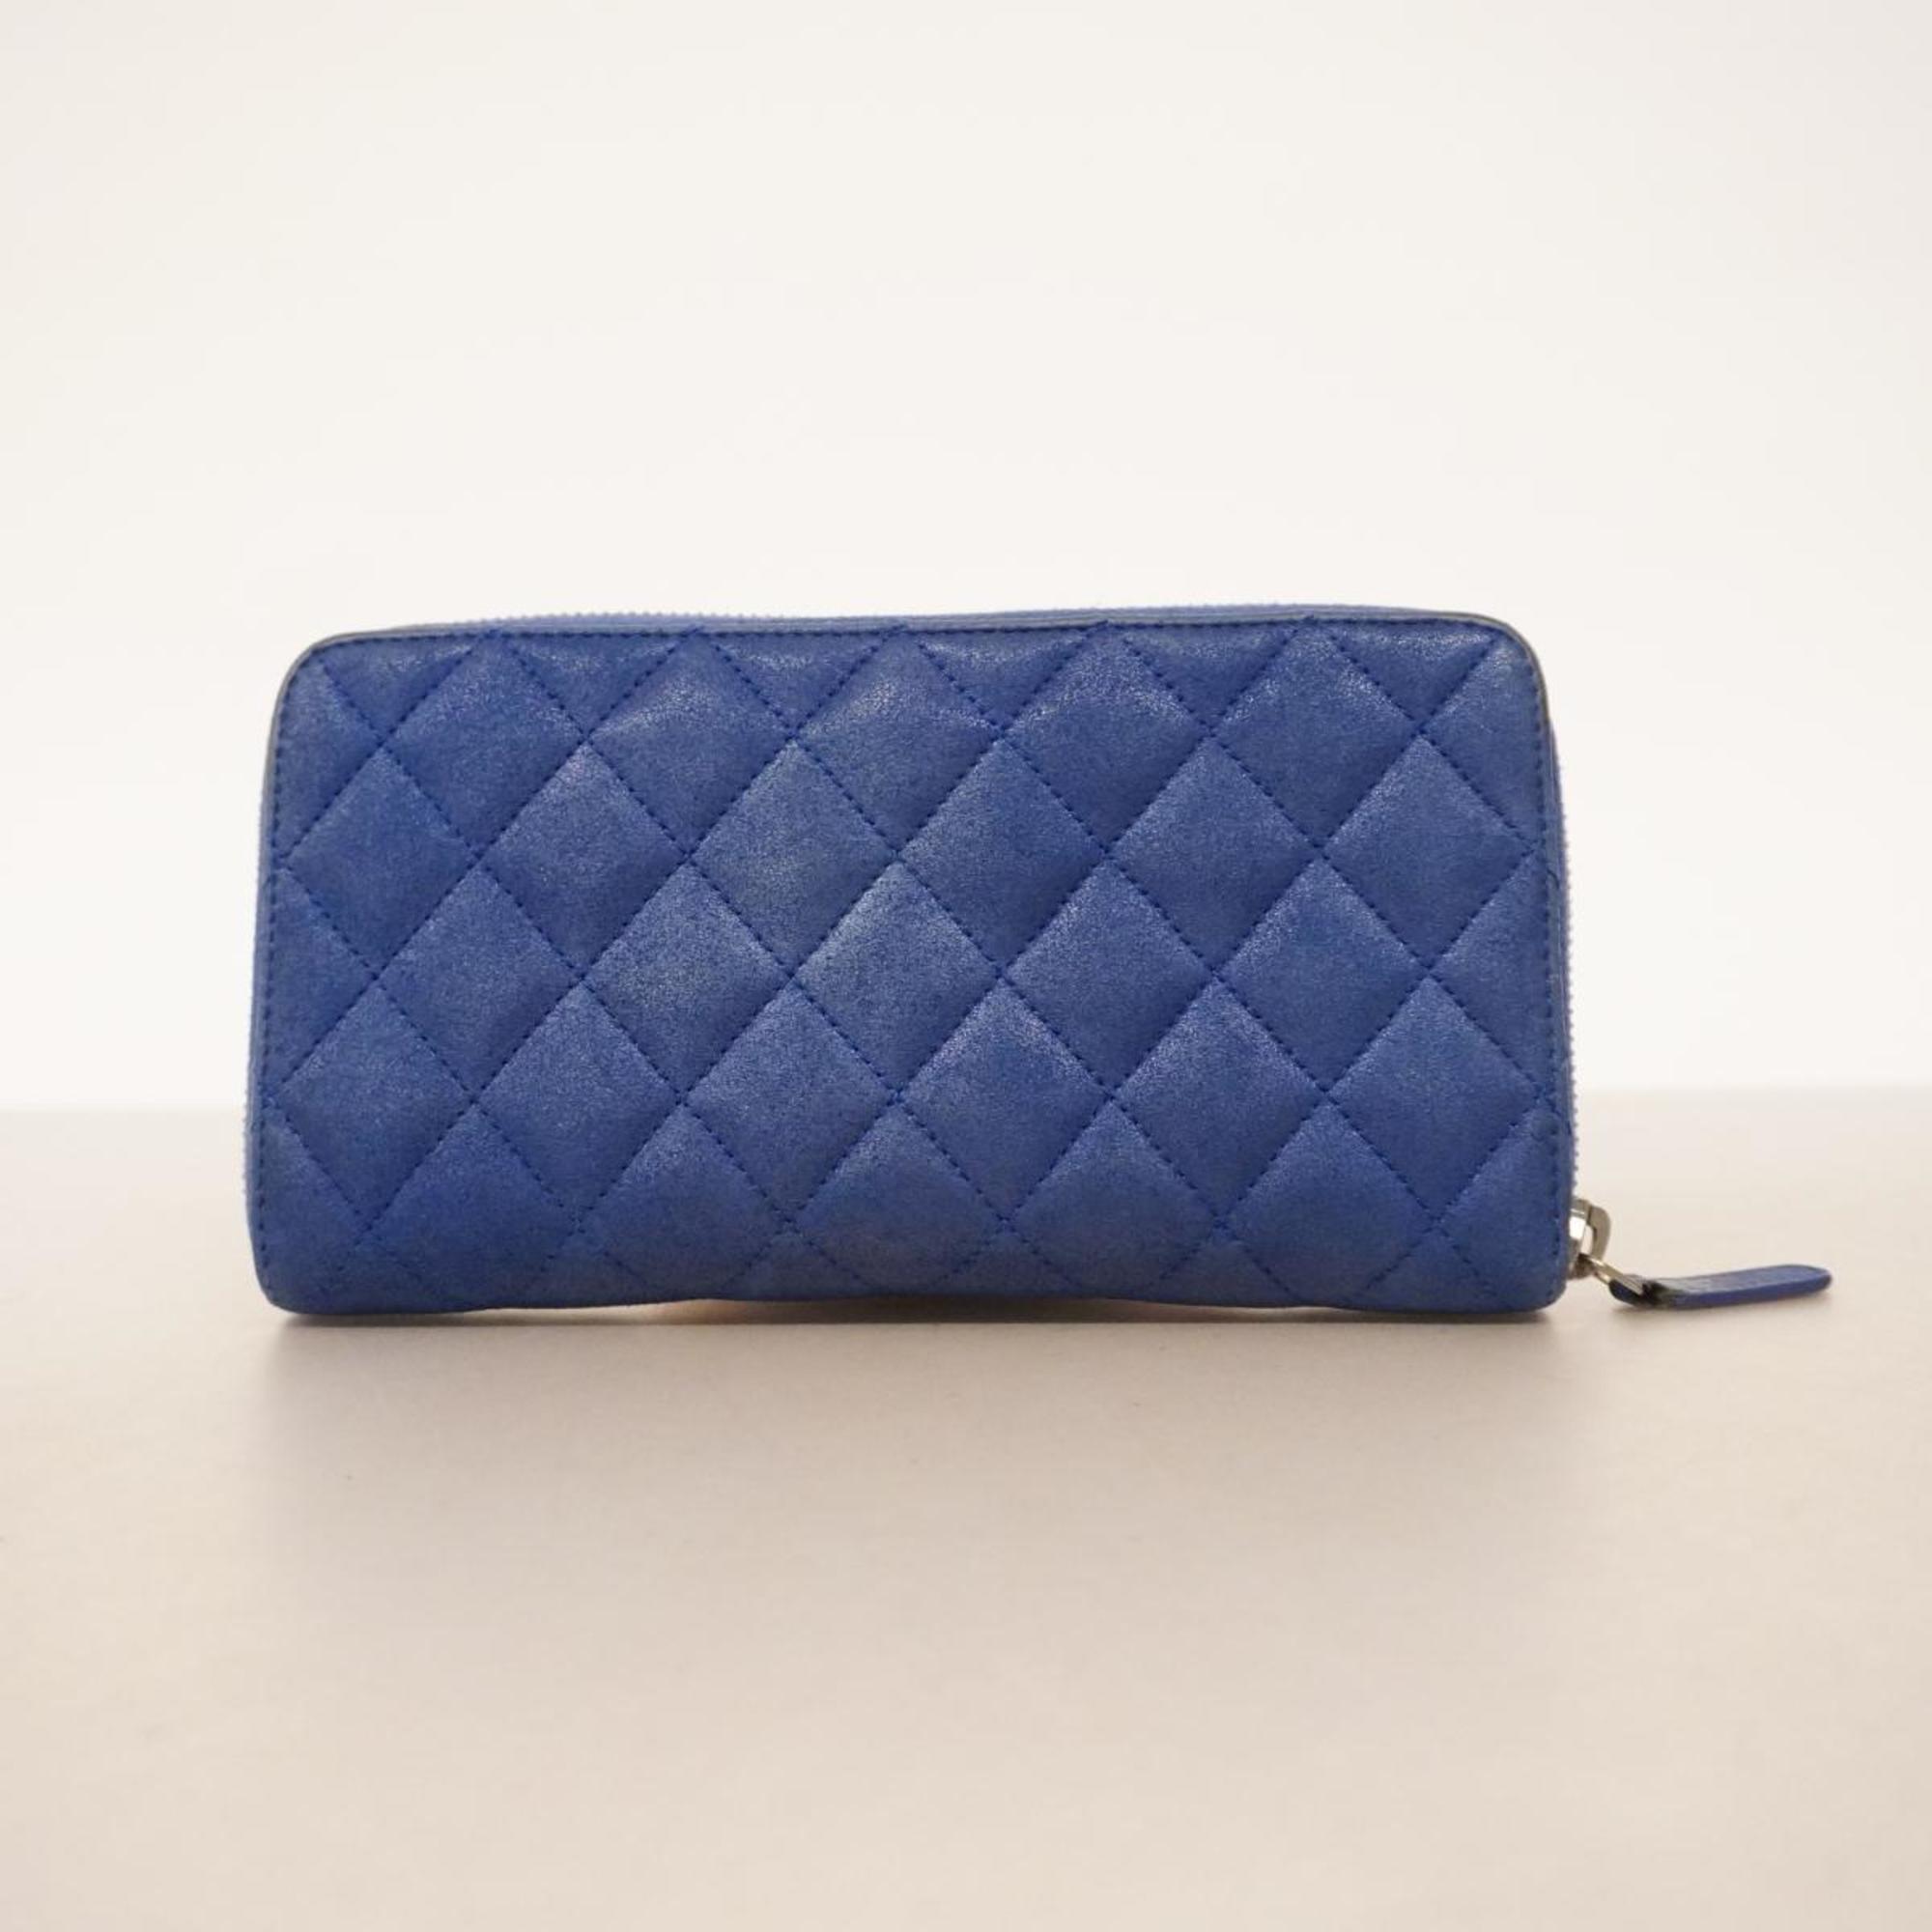 Chanel Long Wallet Matelasse Leather Blue Women's